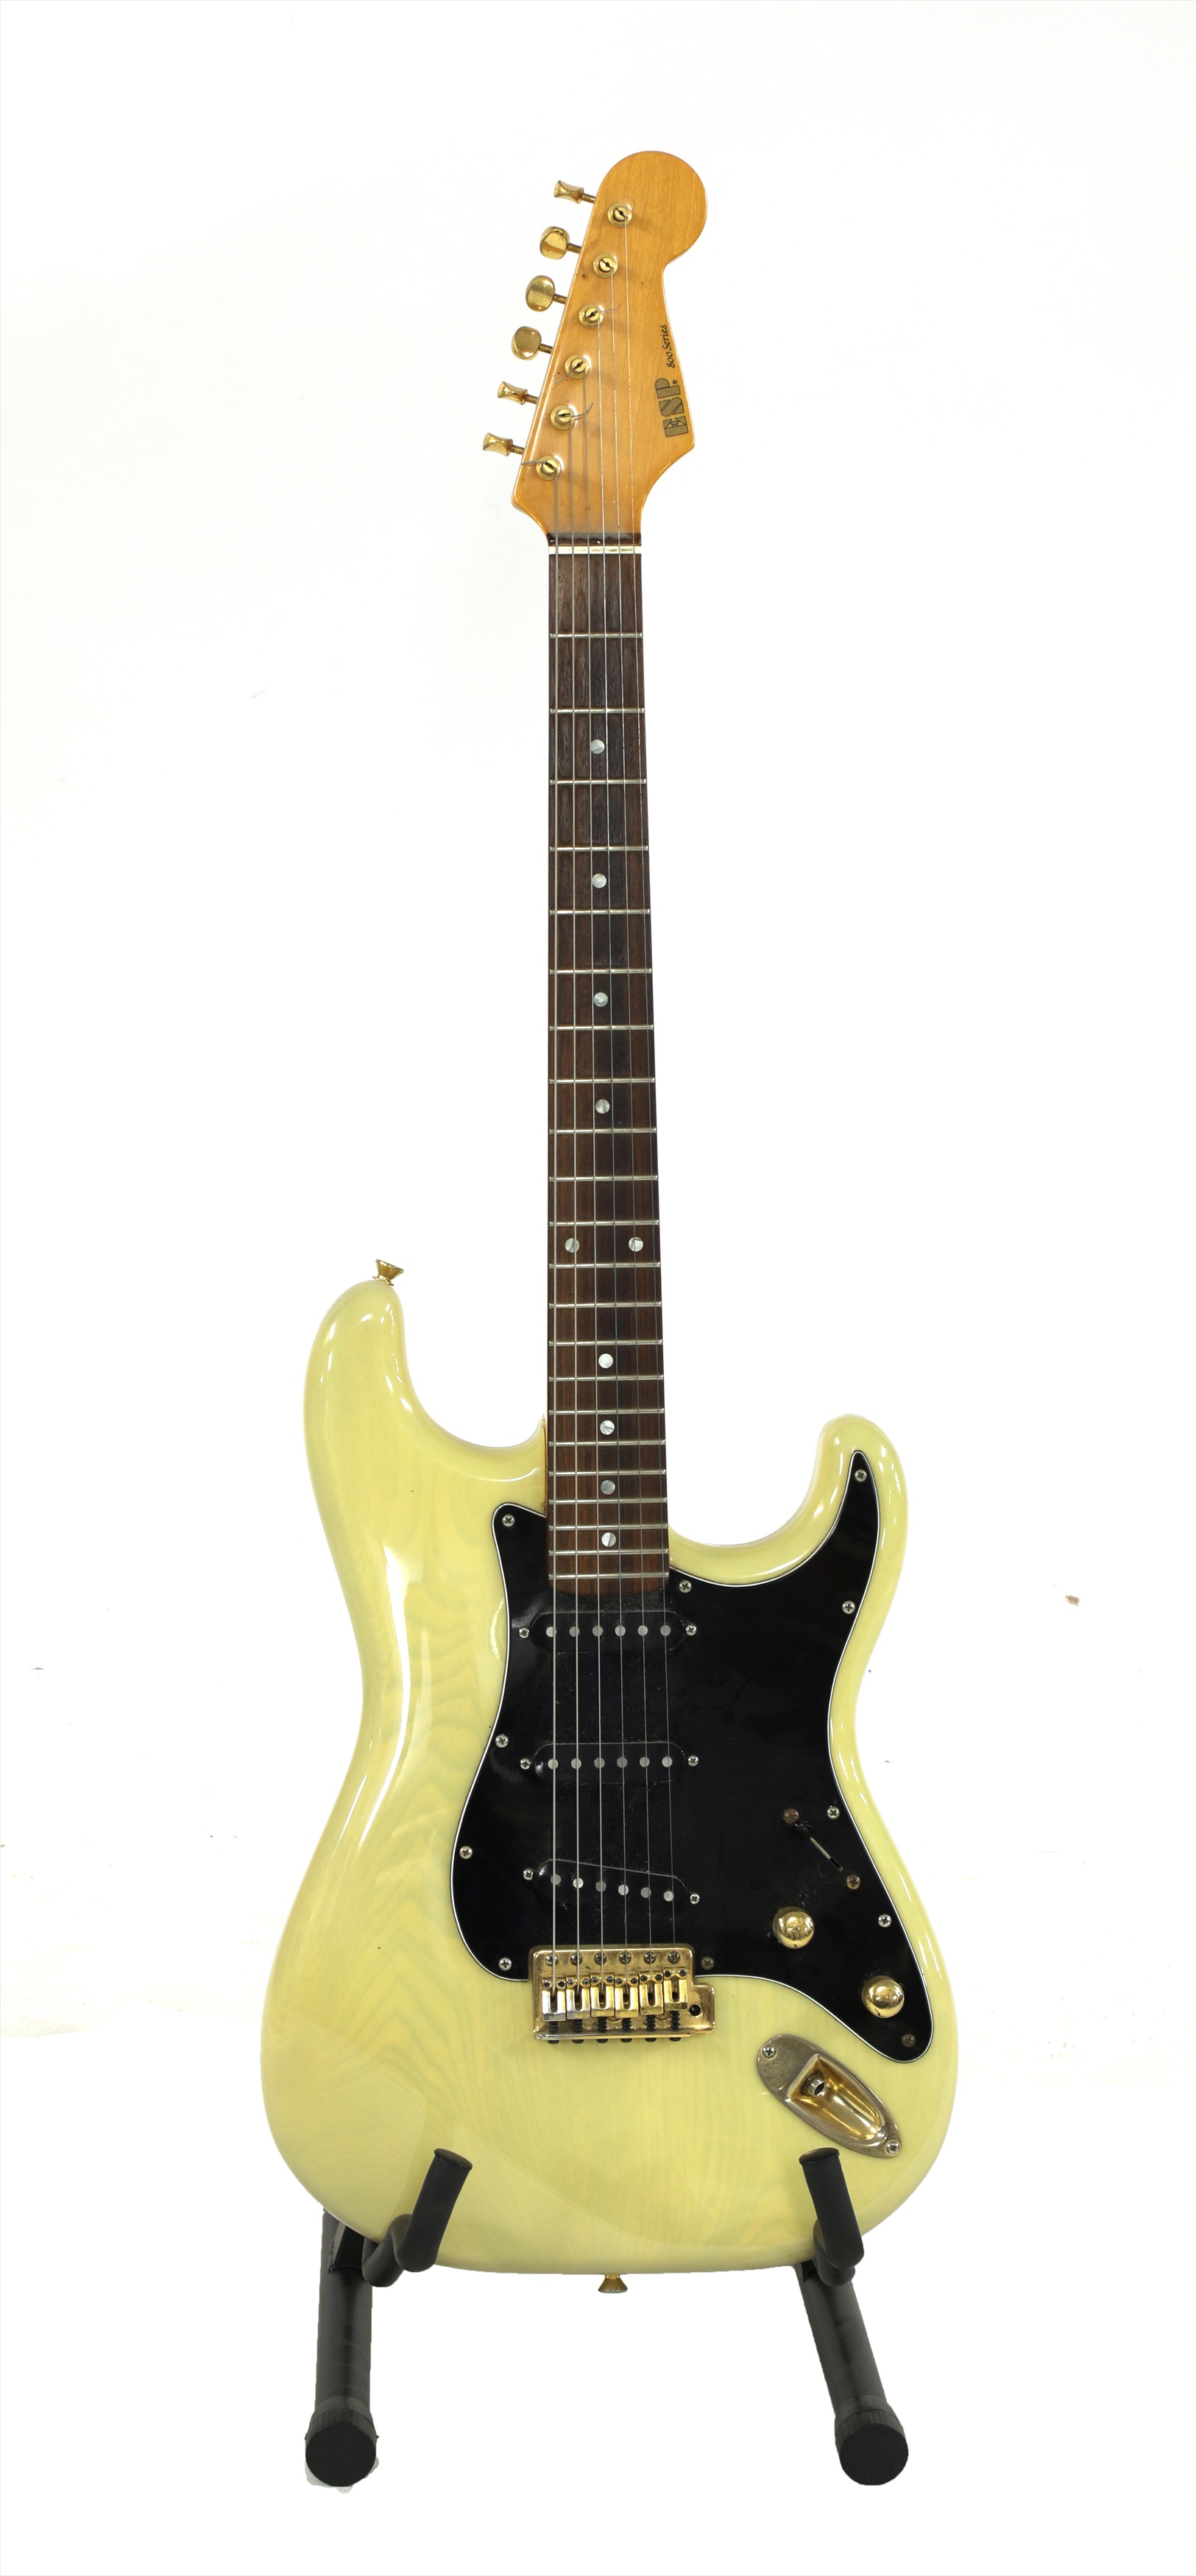 Lot 591 A 1993 Esp 800 Series Electric Guitar